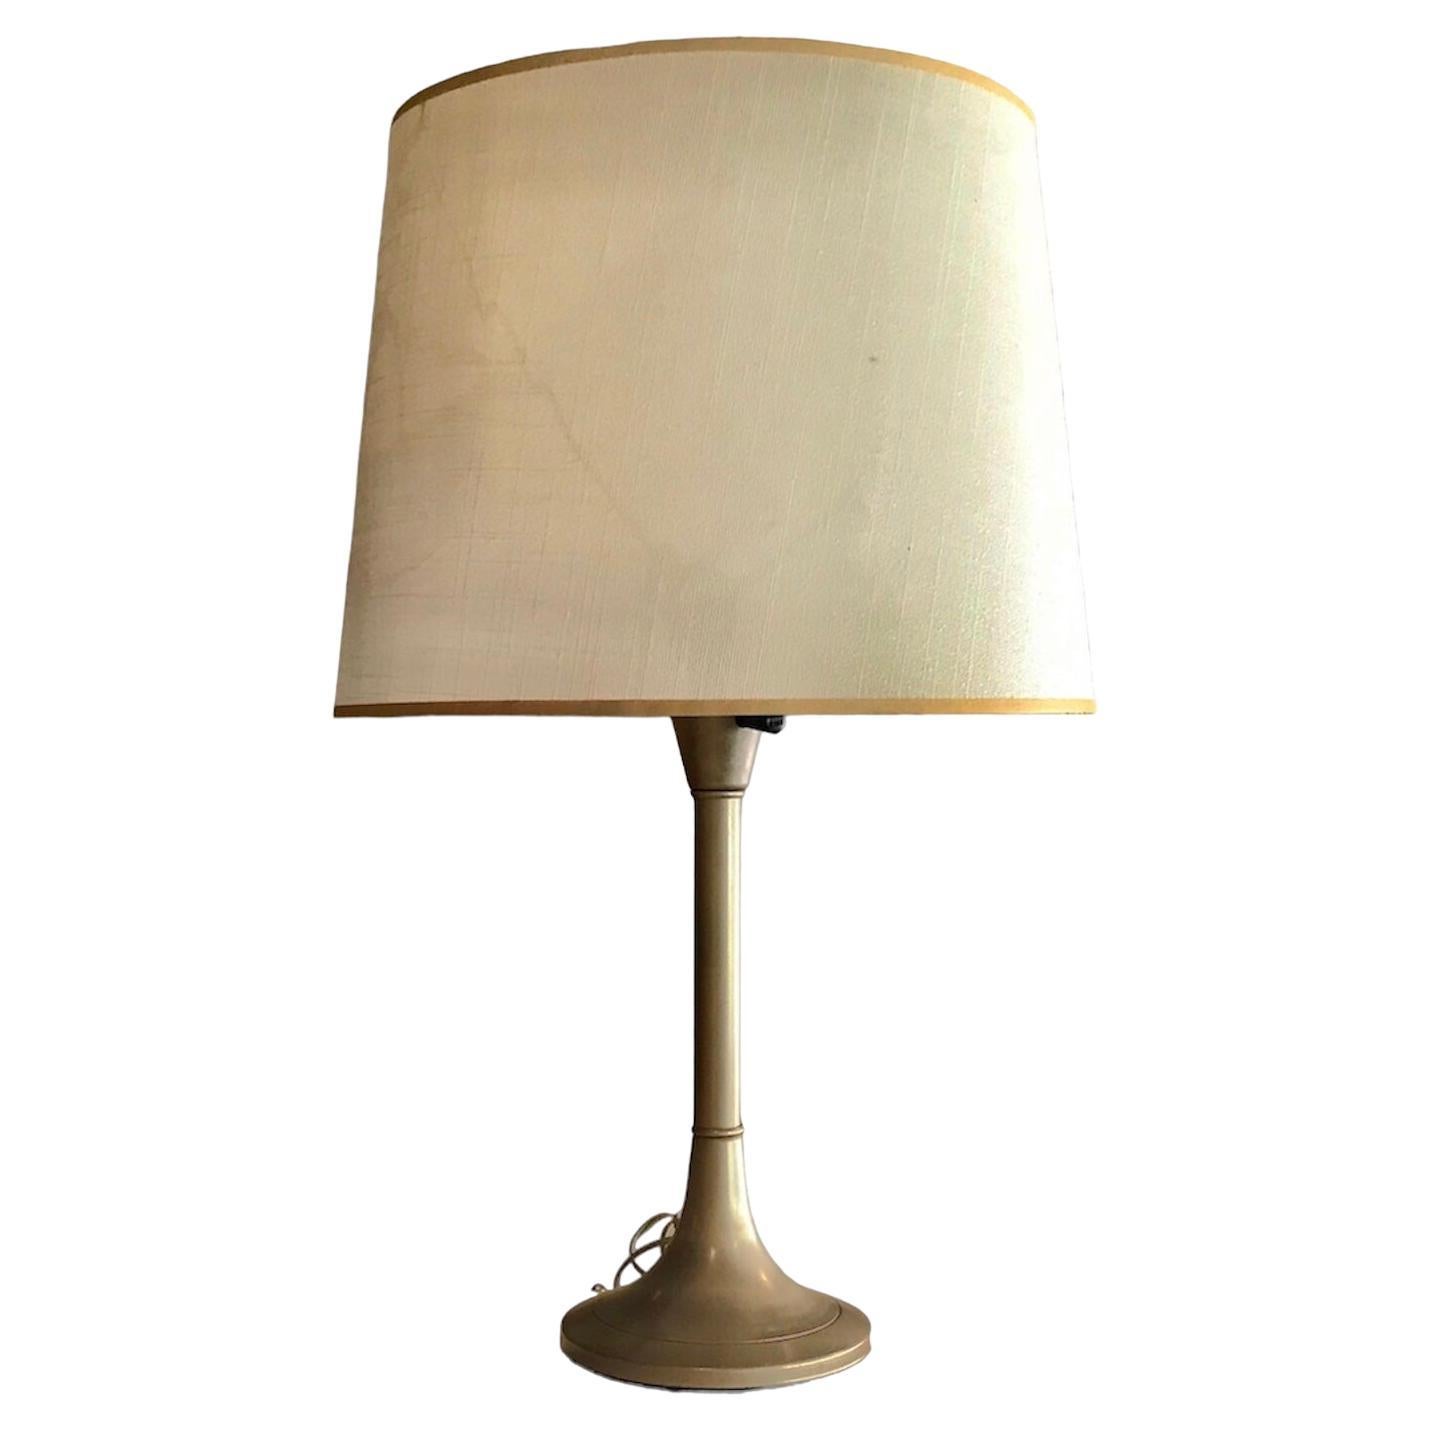 Gerald Thurston Lightolier Style Mid Century Modern Design Desk Lamp 1950s For Sale